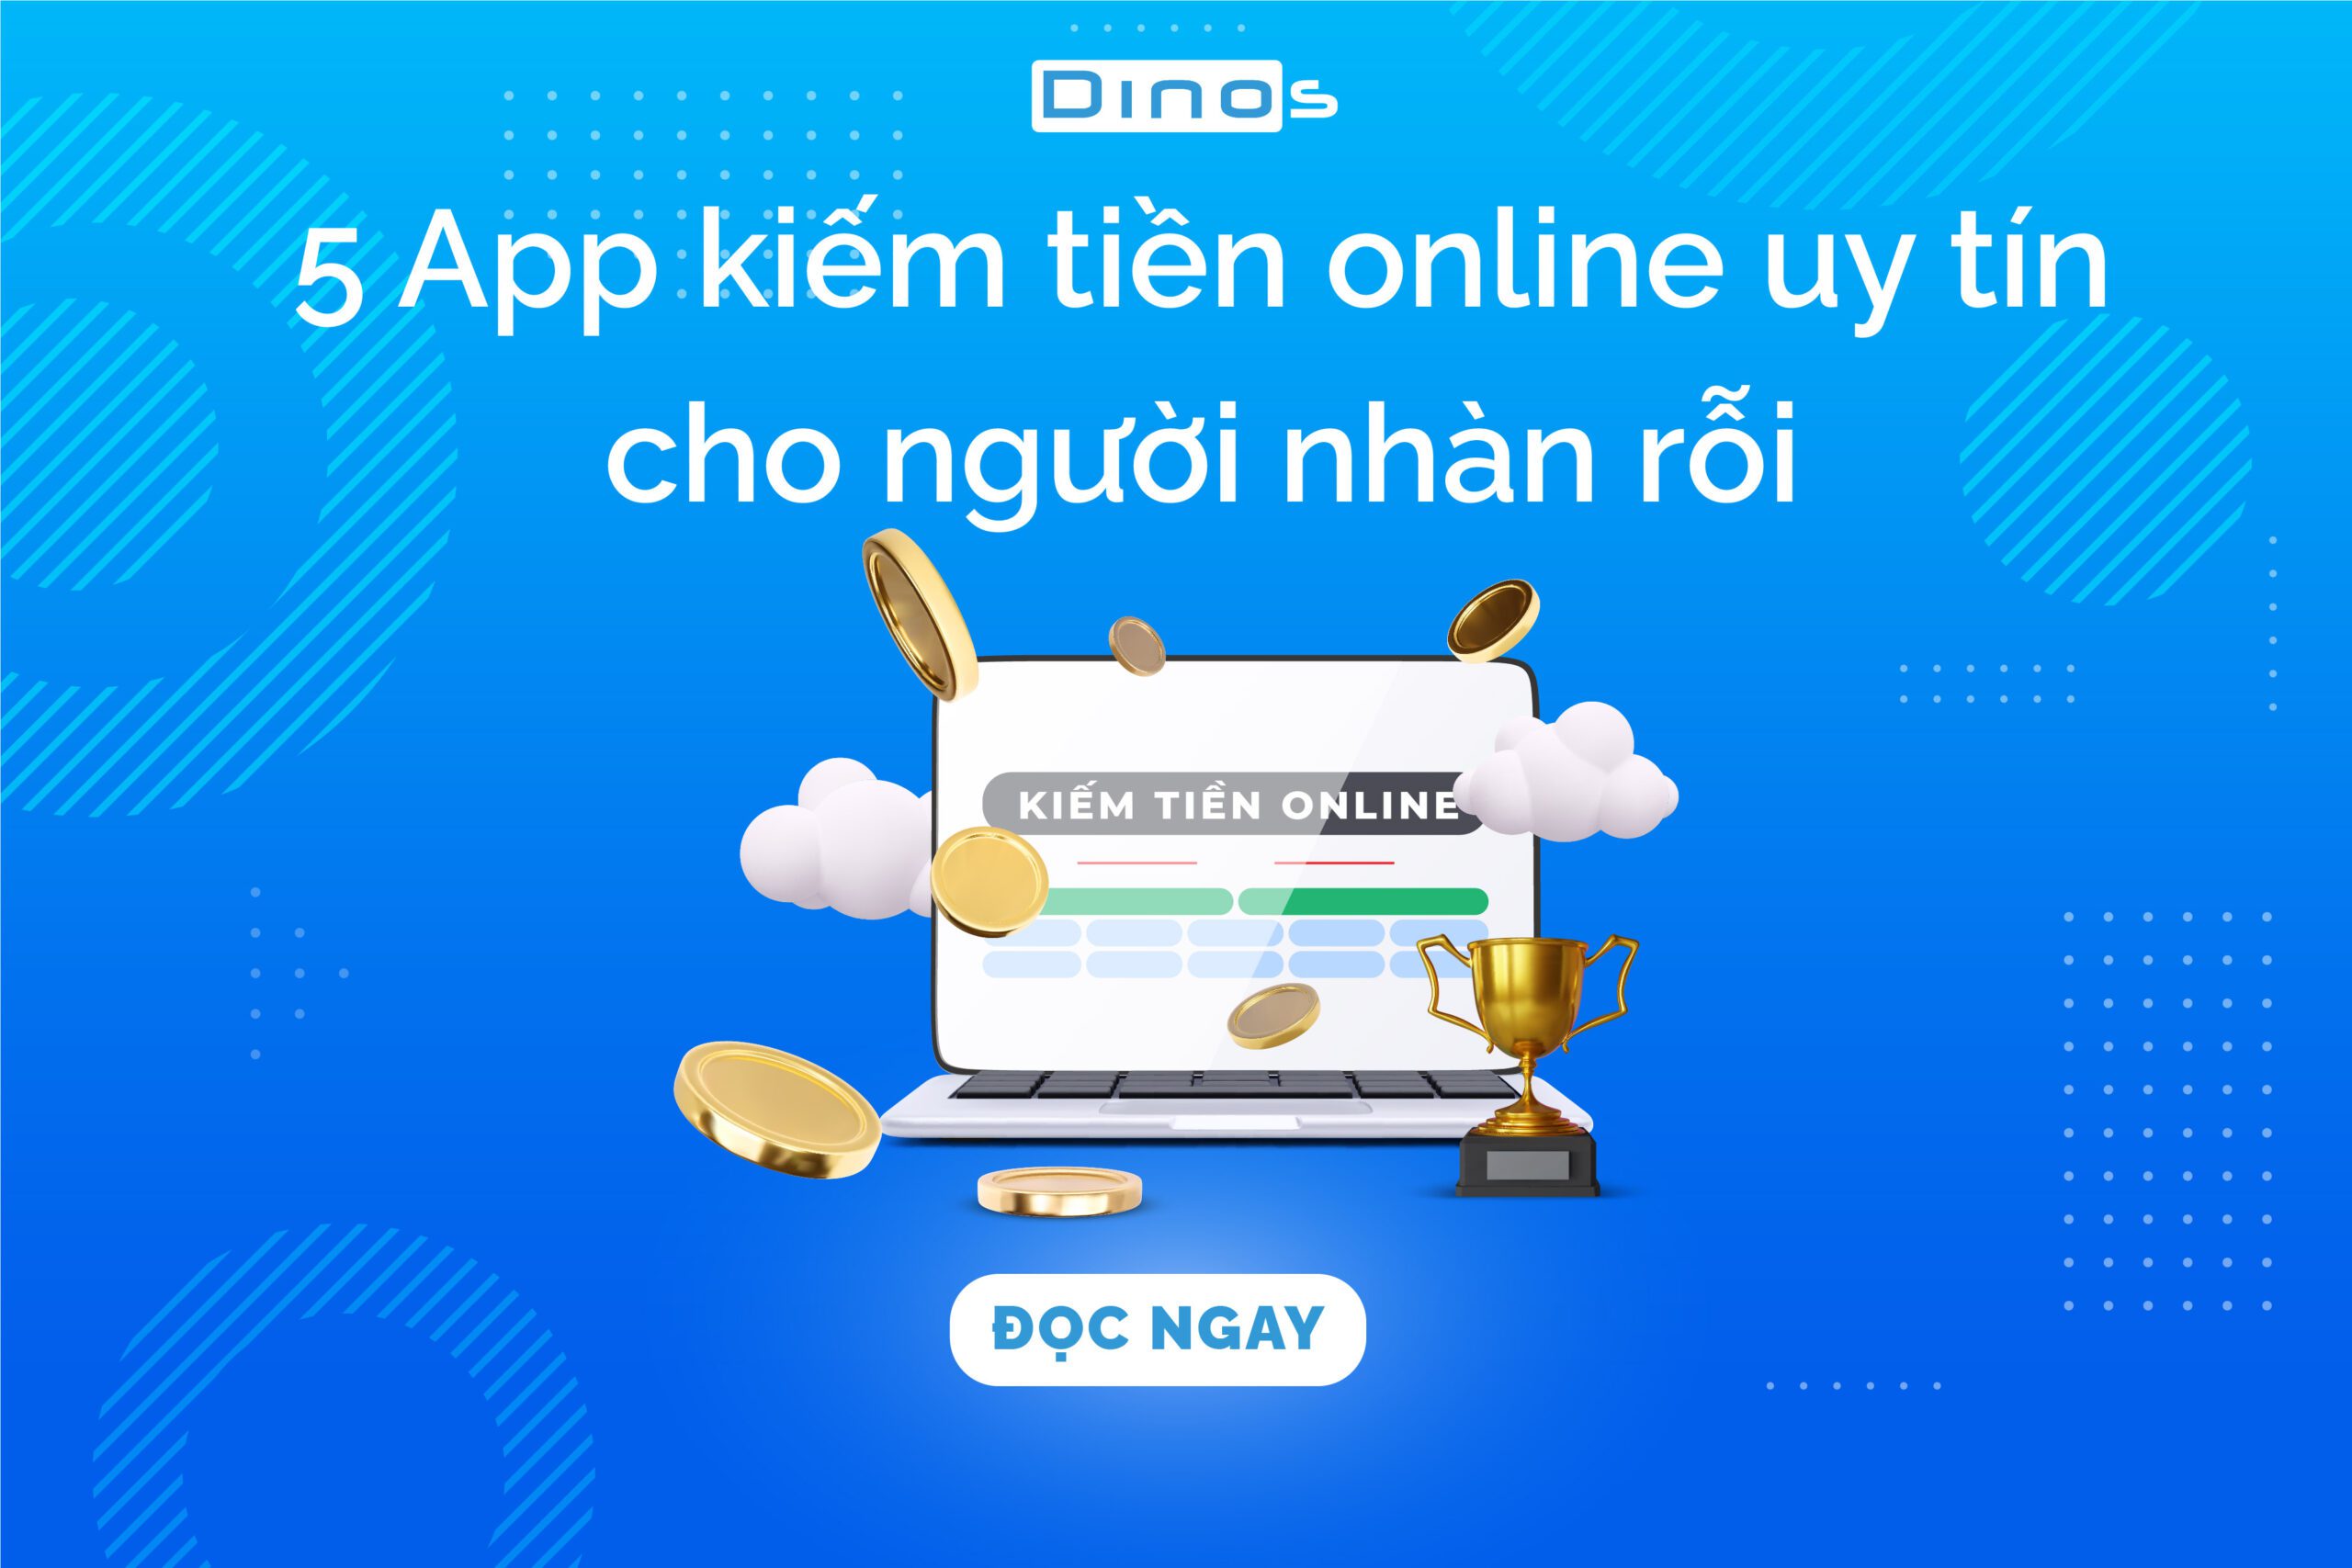 App kiếm tiền online